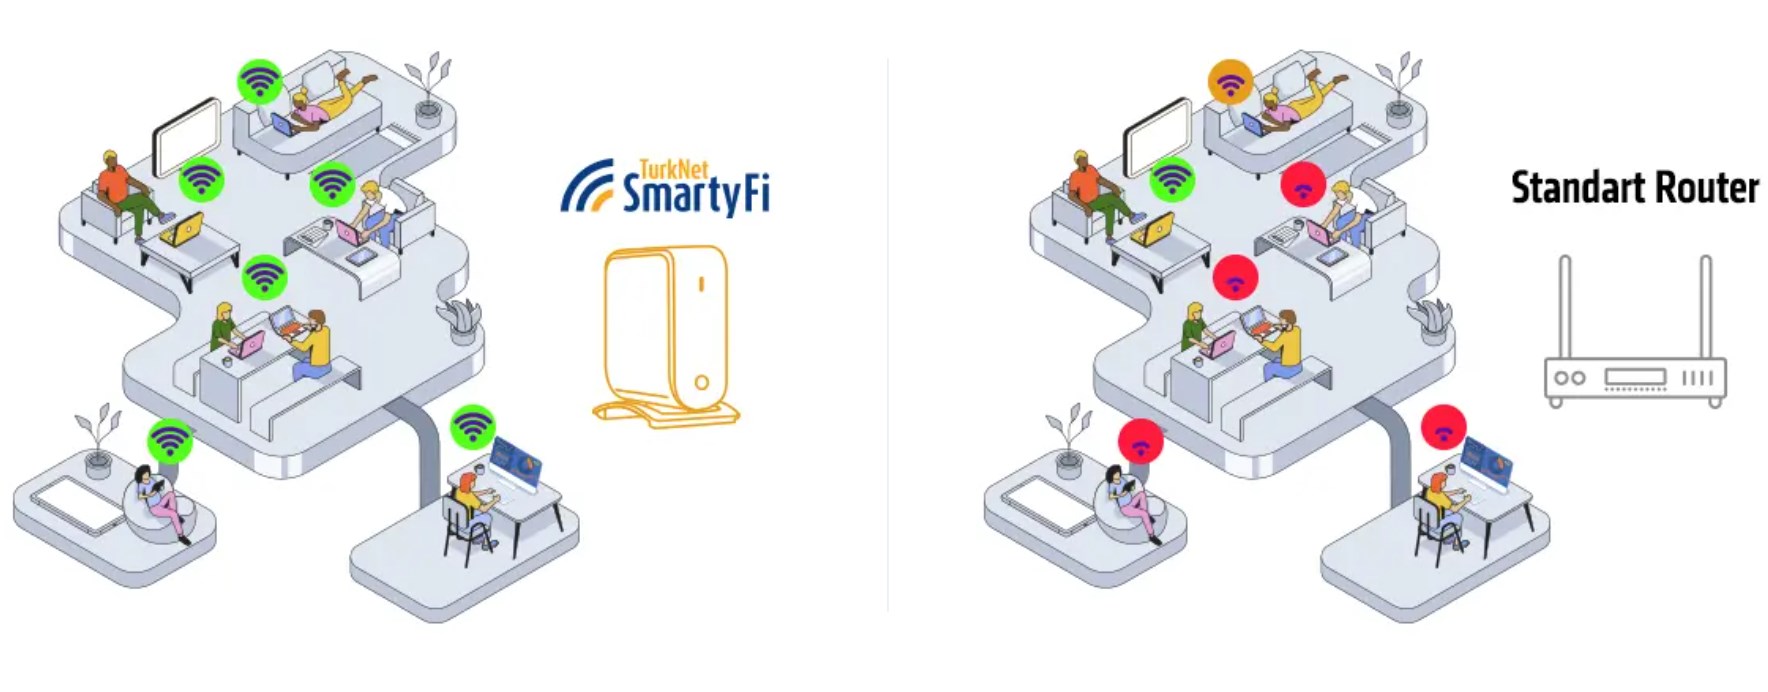 TurkNet SmartyFi ile evinizin her köşesinden internete bağlanın